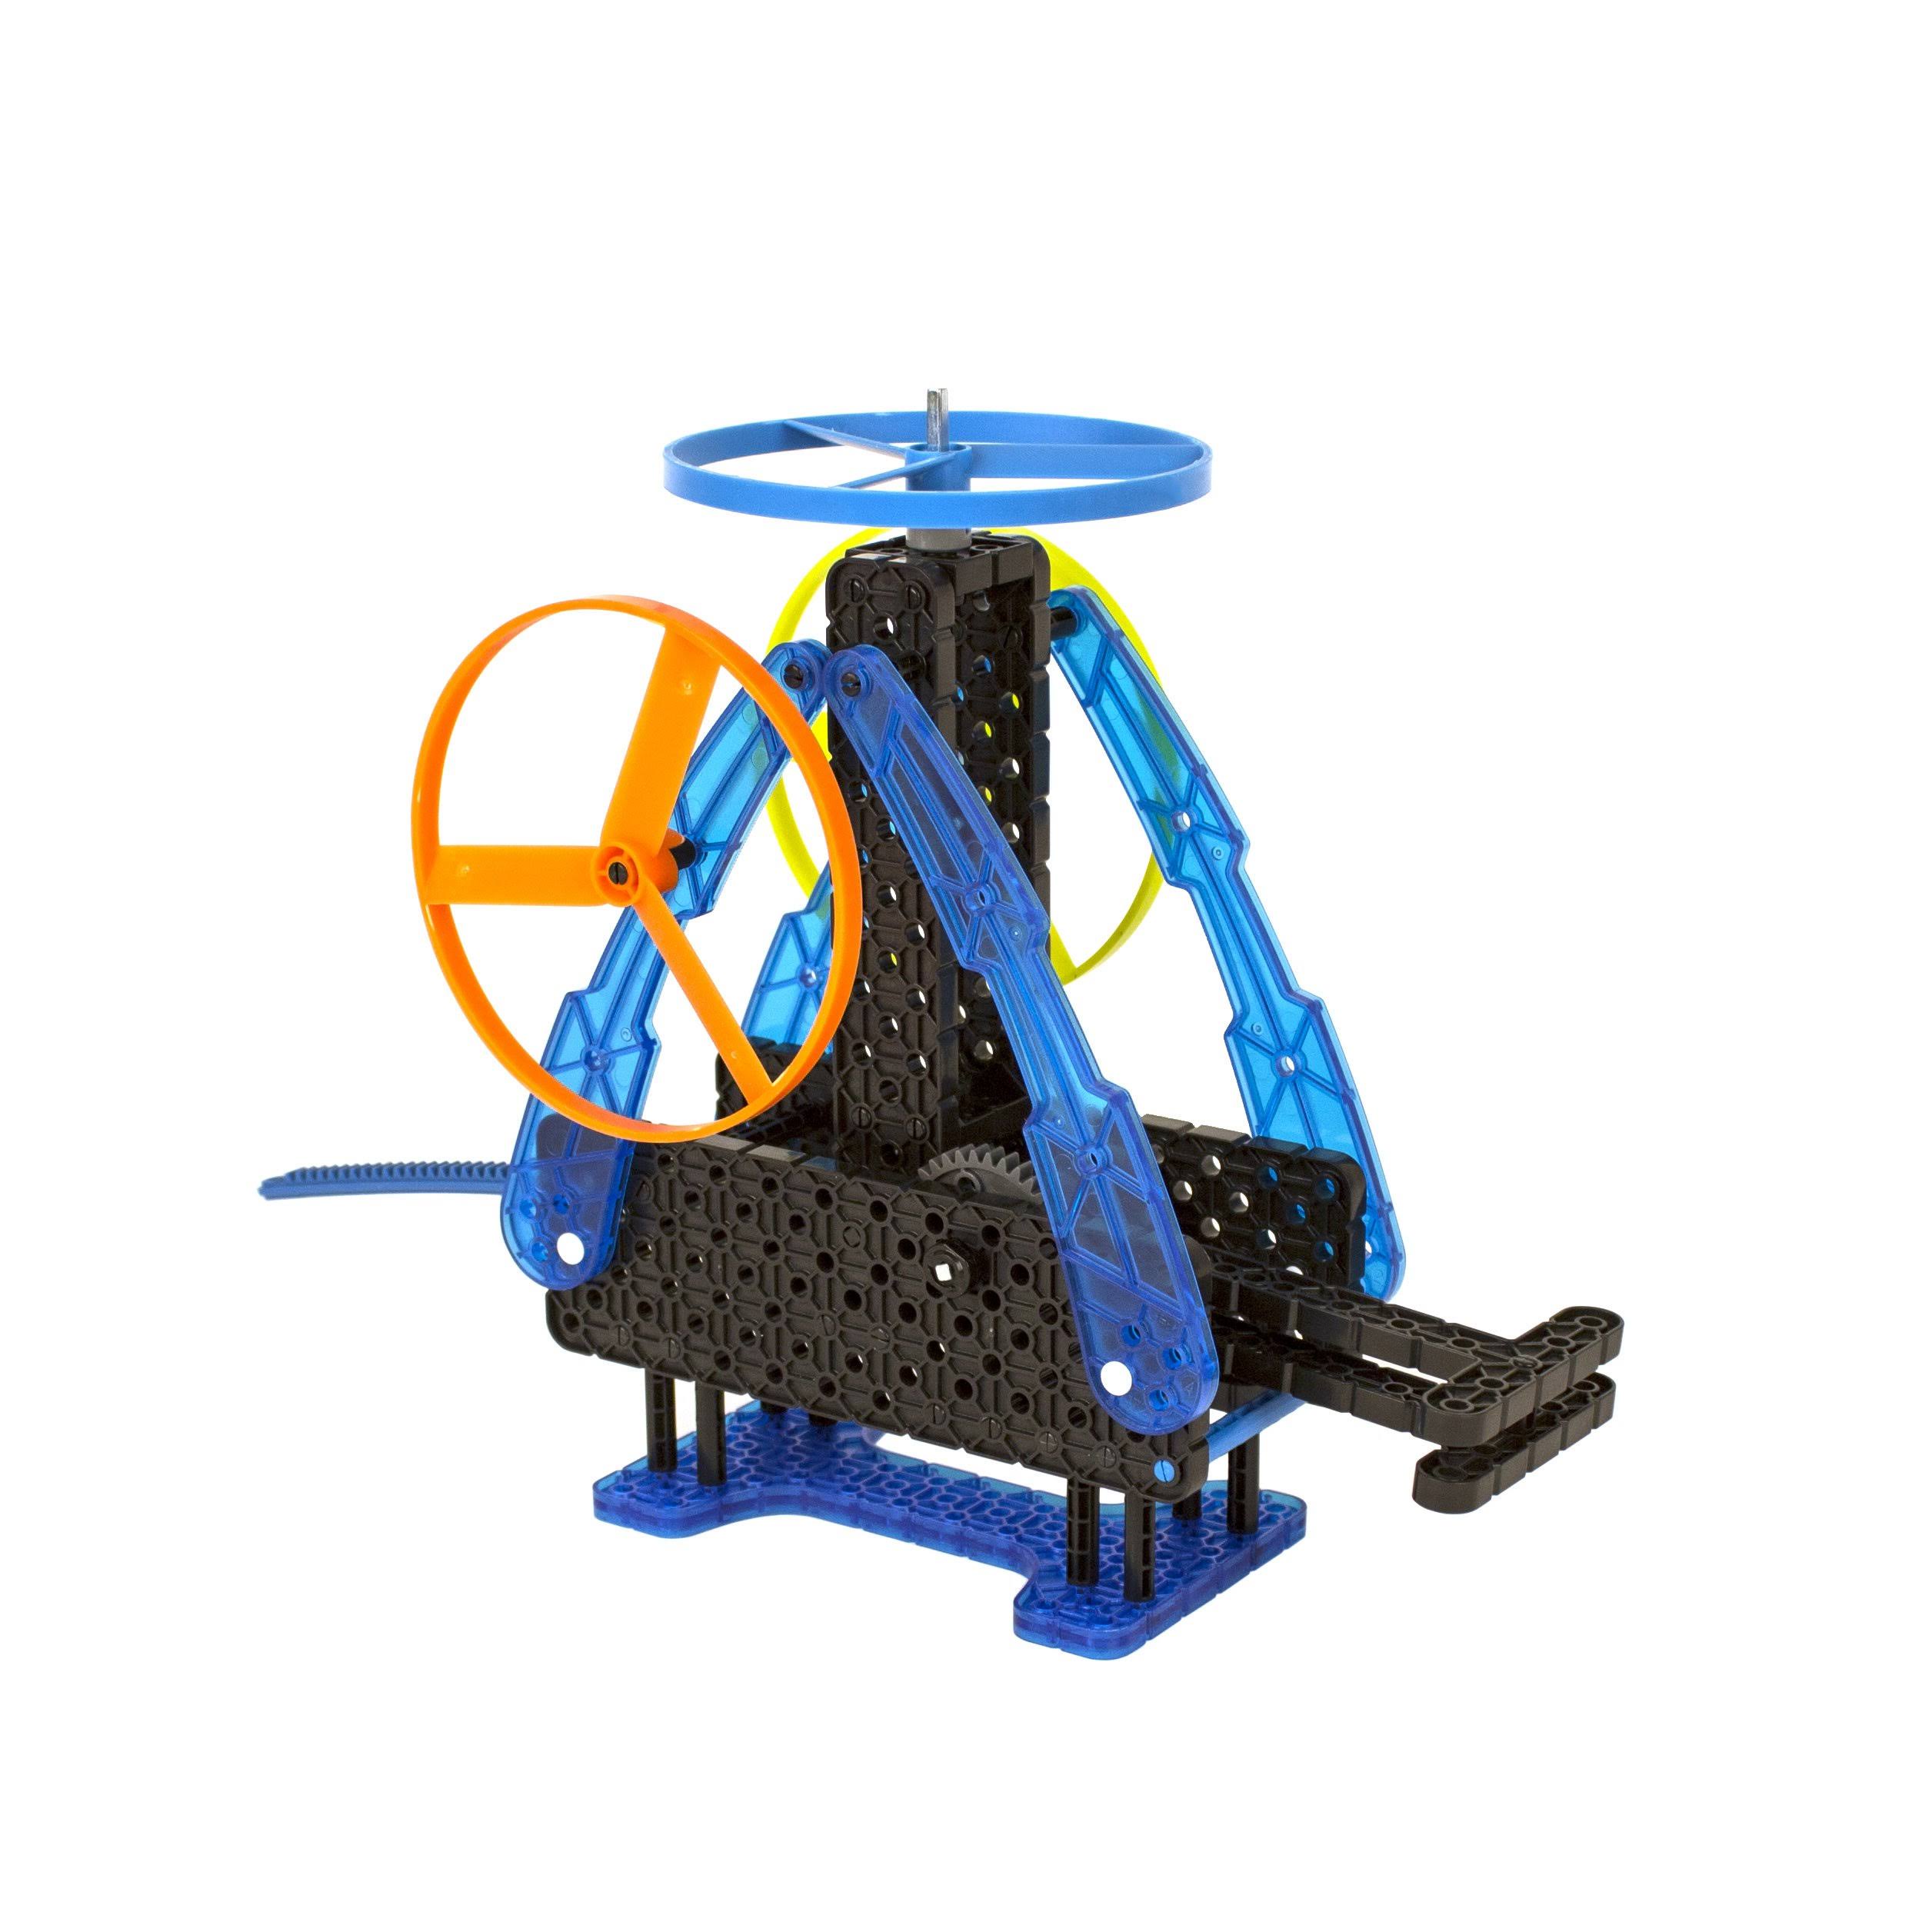 Hexbug Vex Robotics Construction Set - Zip Flyer Launcher